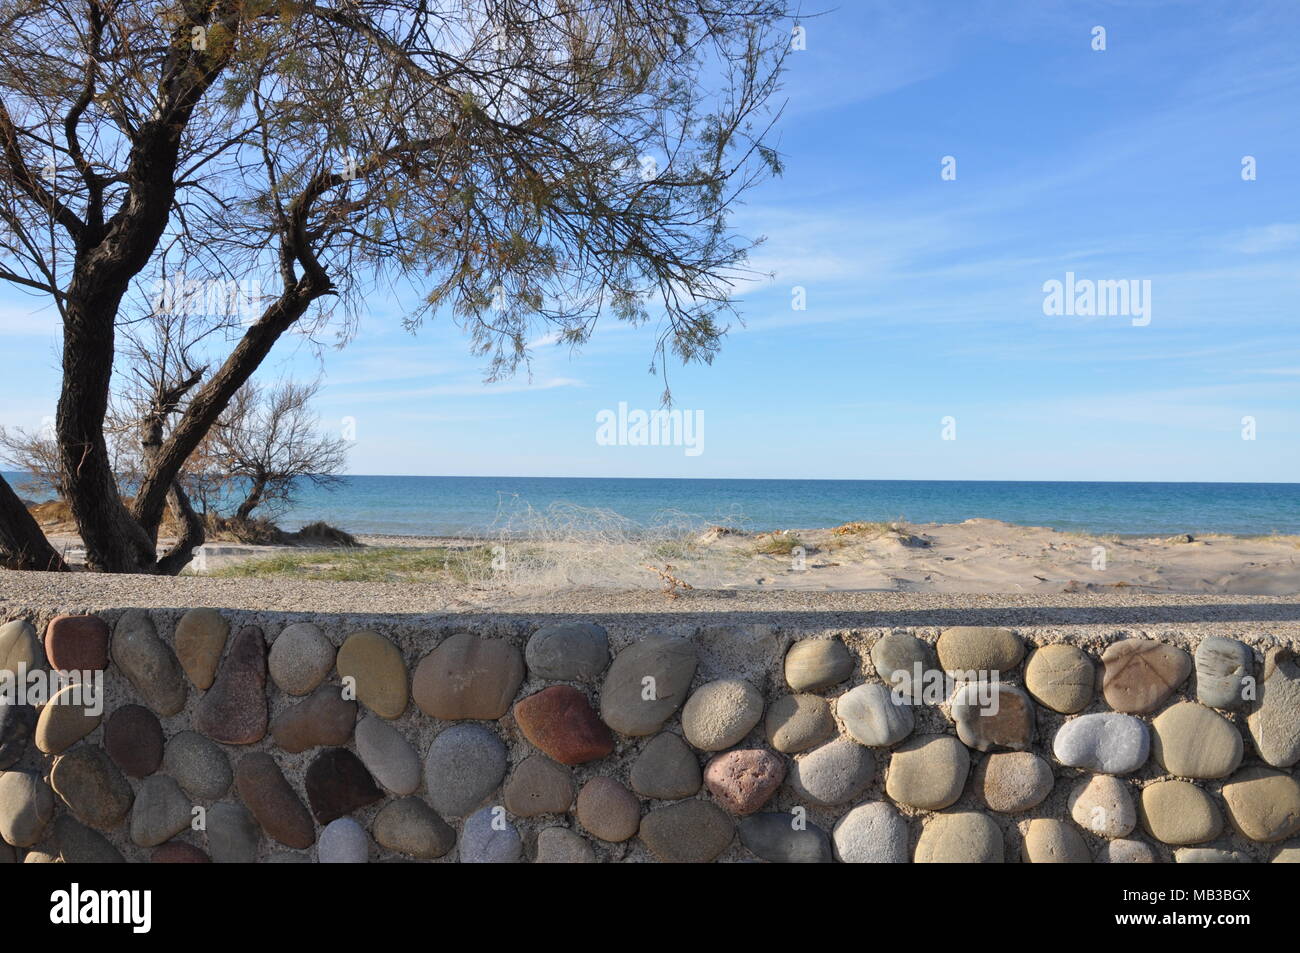 Spiaggia e mare all'orizzonte, cornice con albero e muretto decorato con sassi, Sicily, Italy Stock Photo